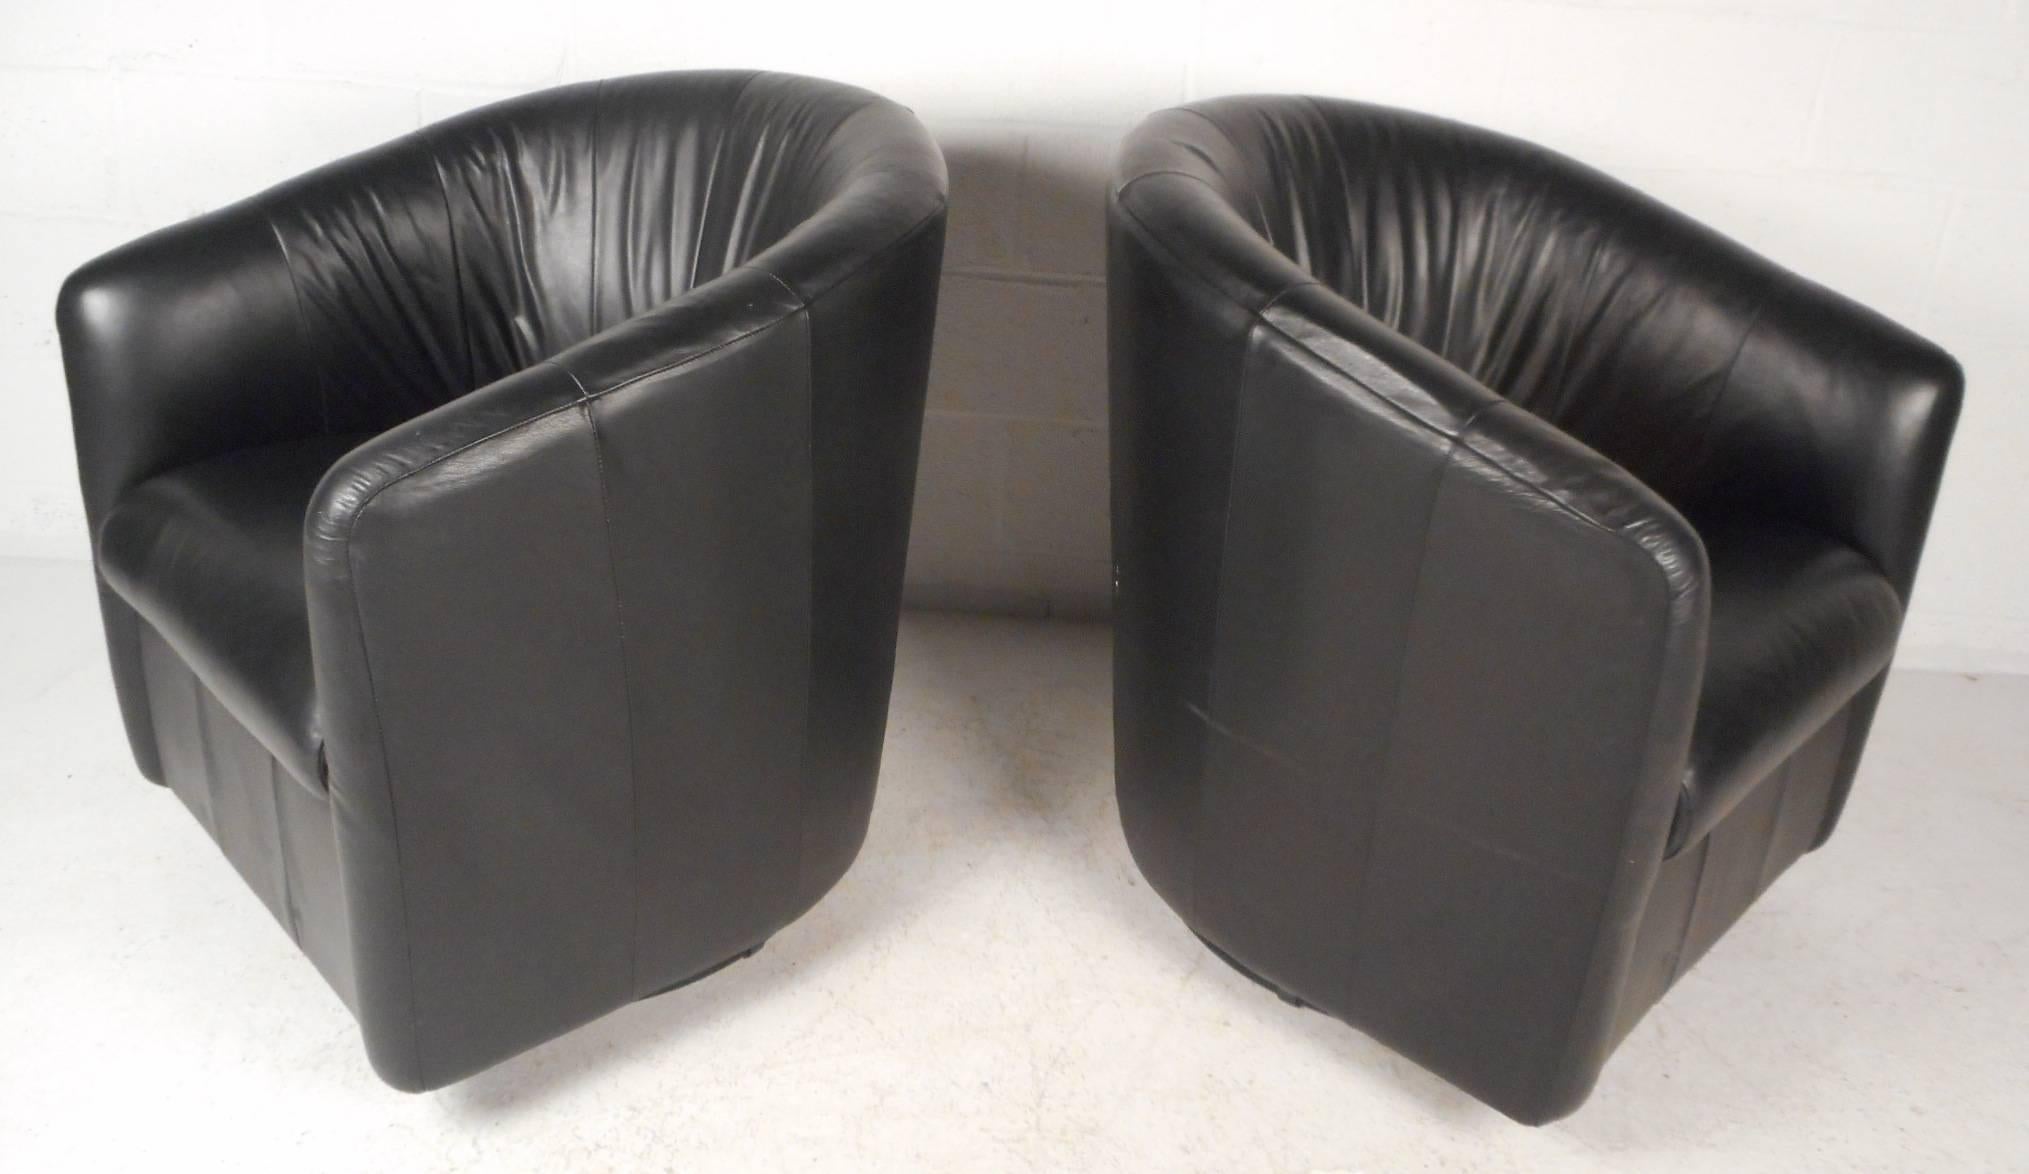 Cette superbe paire de chaises longues vintage modernes est recouverte d'un élégant revêtement en vinyle noir. Un design unique avec un épais coussin rembourré et des accoudoirs inclinés assure un confort optimal. Ces chaises longues à dossier en